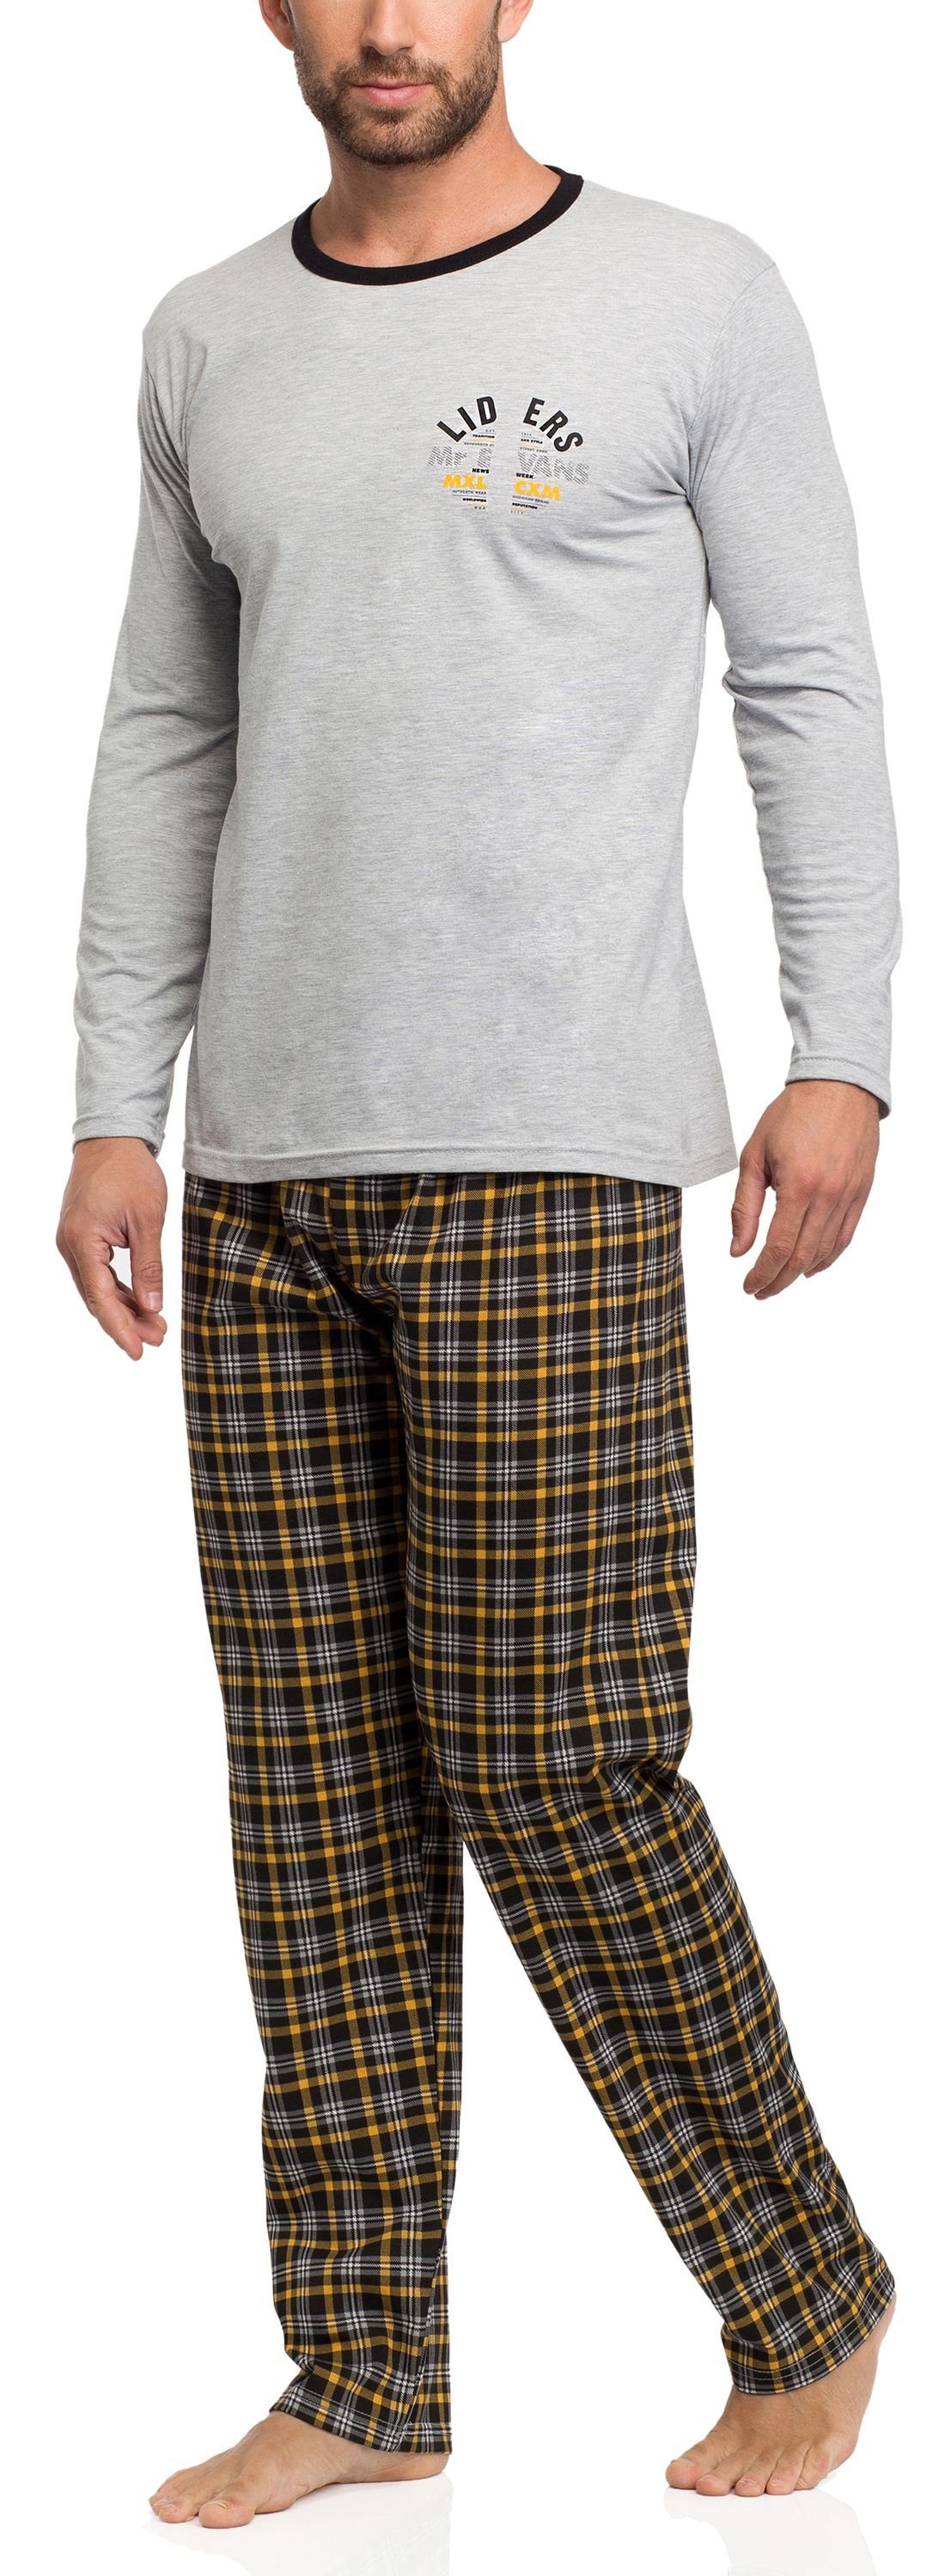 [Schauen Sie sich neue Artikel an!] Timone Schlafanzug Herren Schlafanzug TITR373/371 Muster-v1